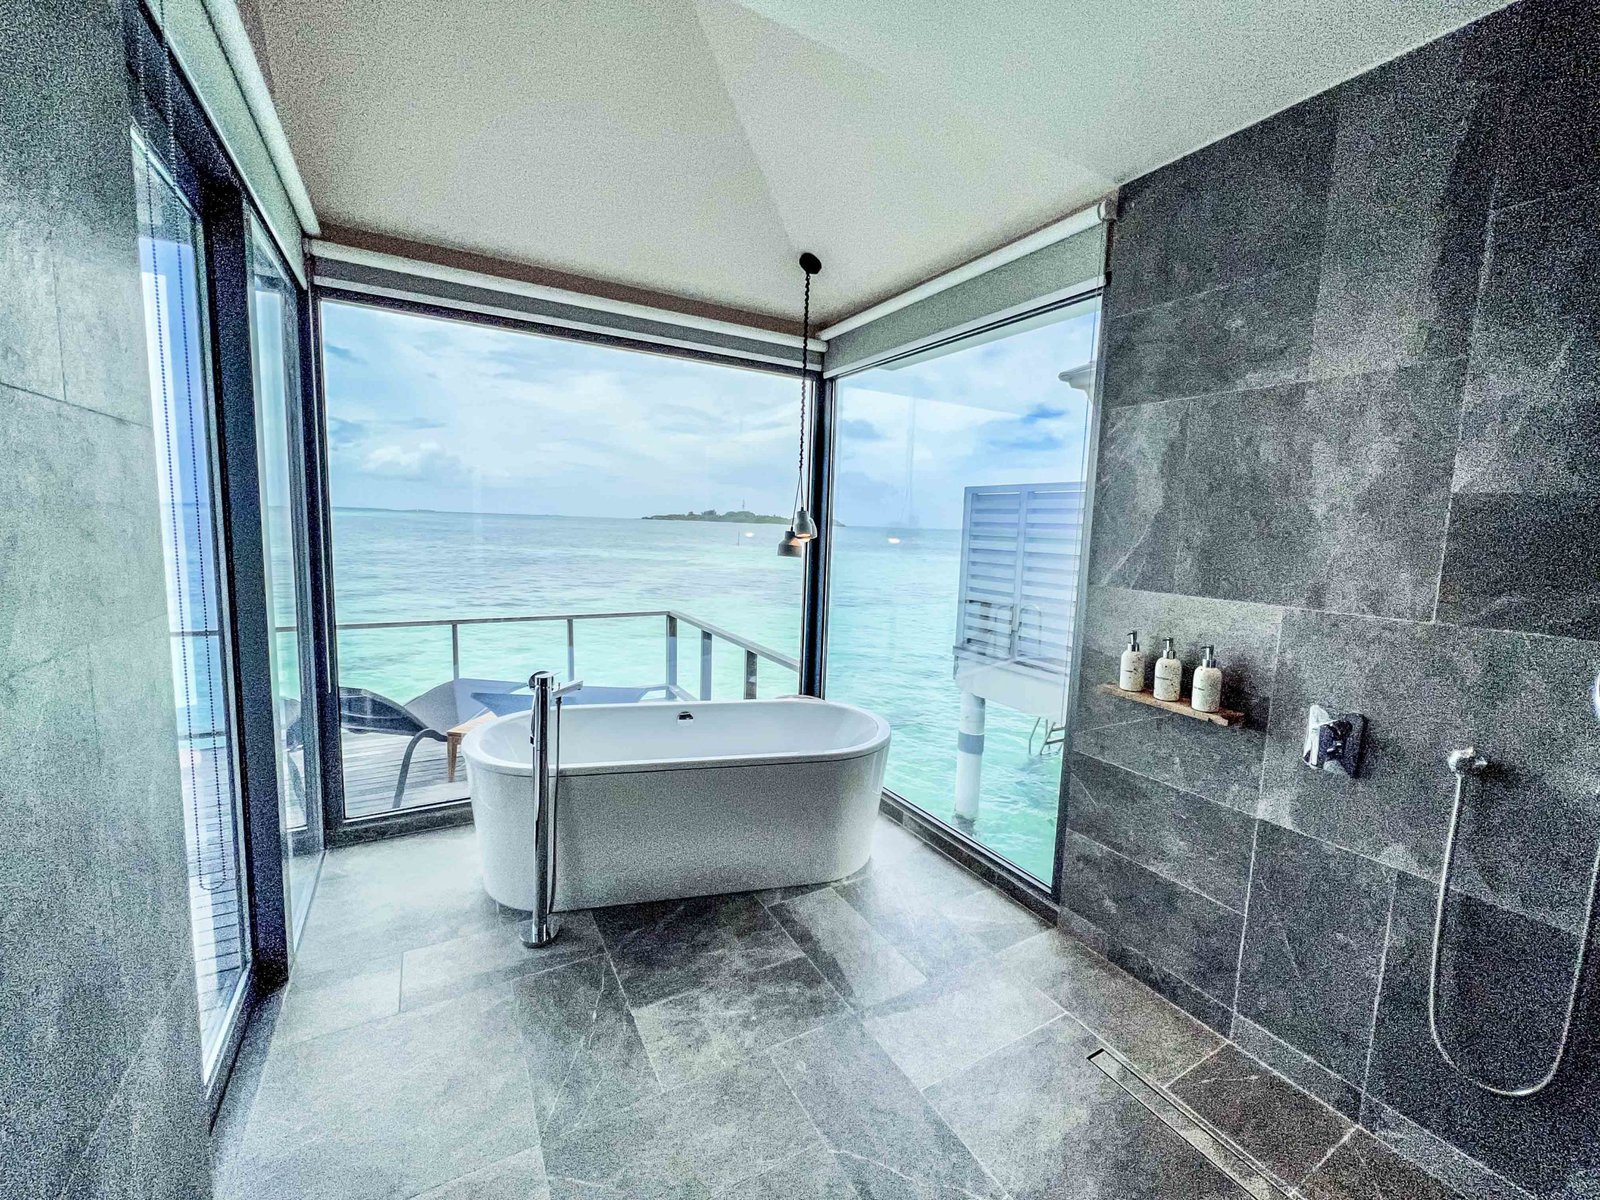 Le Meridien Maldives Resort Spa Bathroom 3715